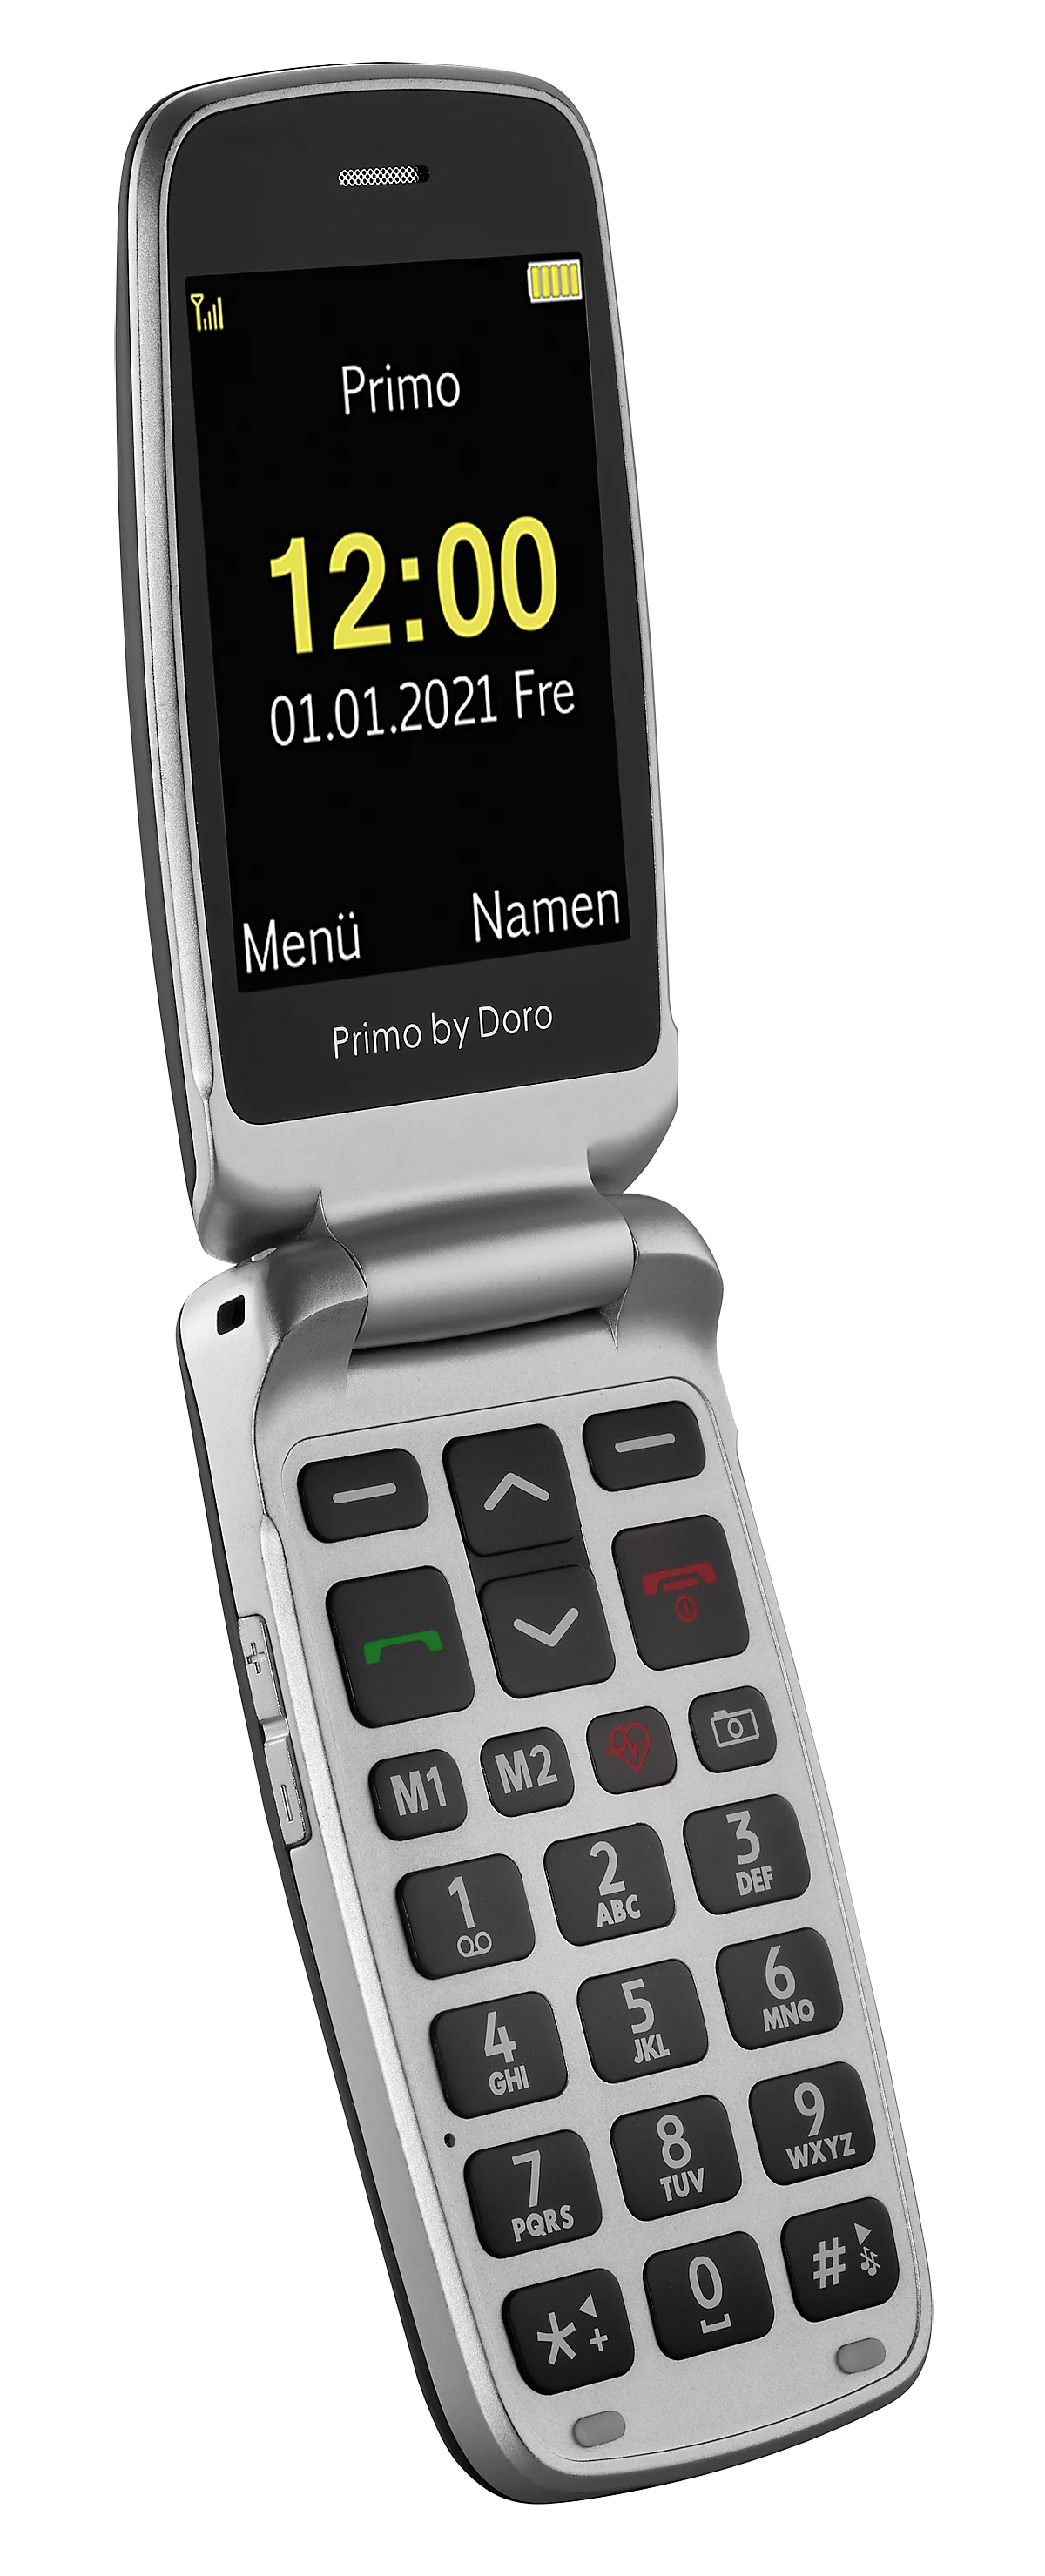 Seniorenhandy Primo™ 418 by Doro, Ortungsfunktion, Shop Schäfer & Innen- mit Kardiomessung, WiFi/GPS/Bluetooth, Ladestation kaufen | Sturzsensor, günstig SOS-Taste, Außen Kamera